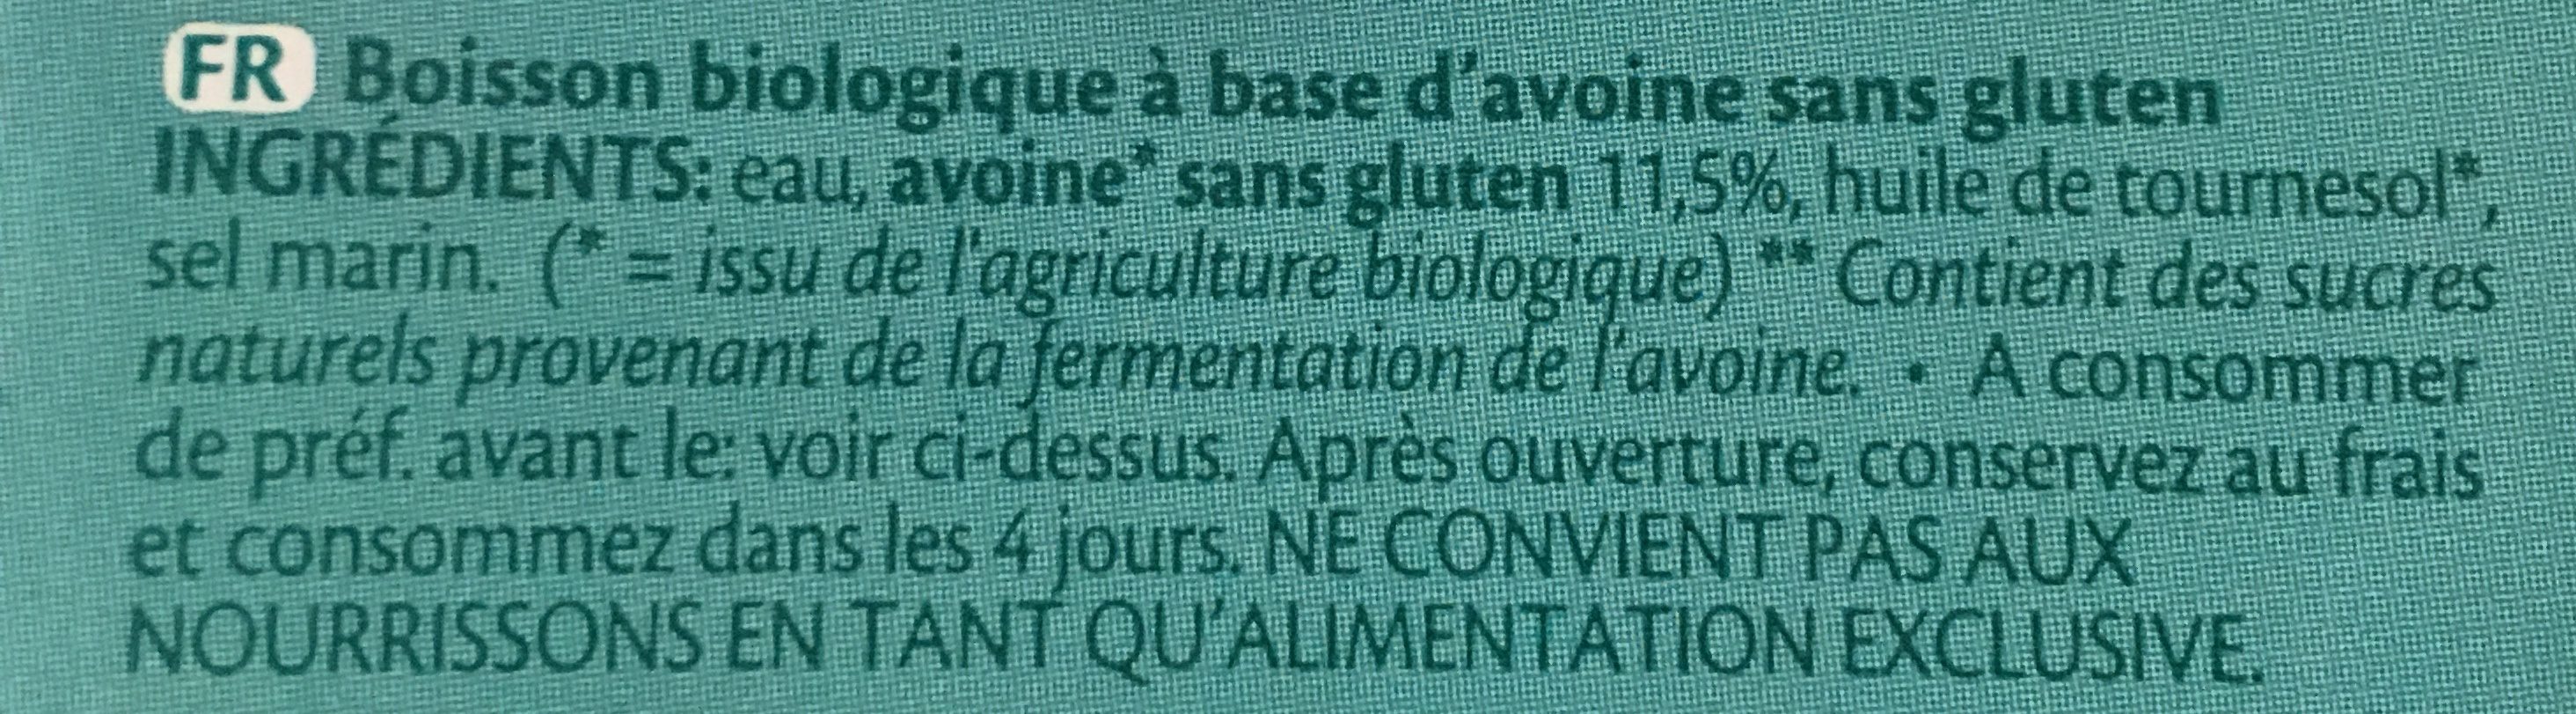 Oat Avoine Drink gluten free - Ingrediënten - fr